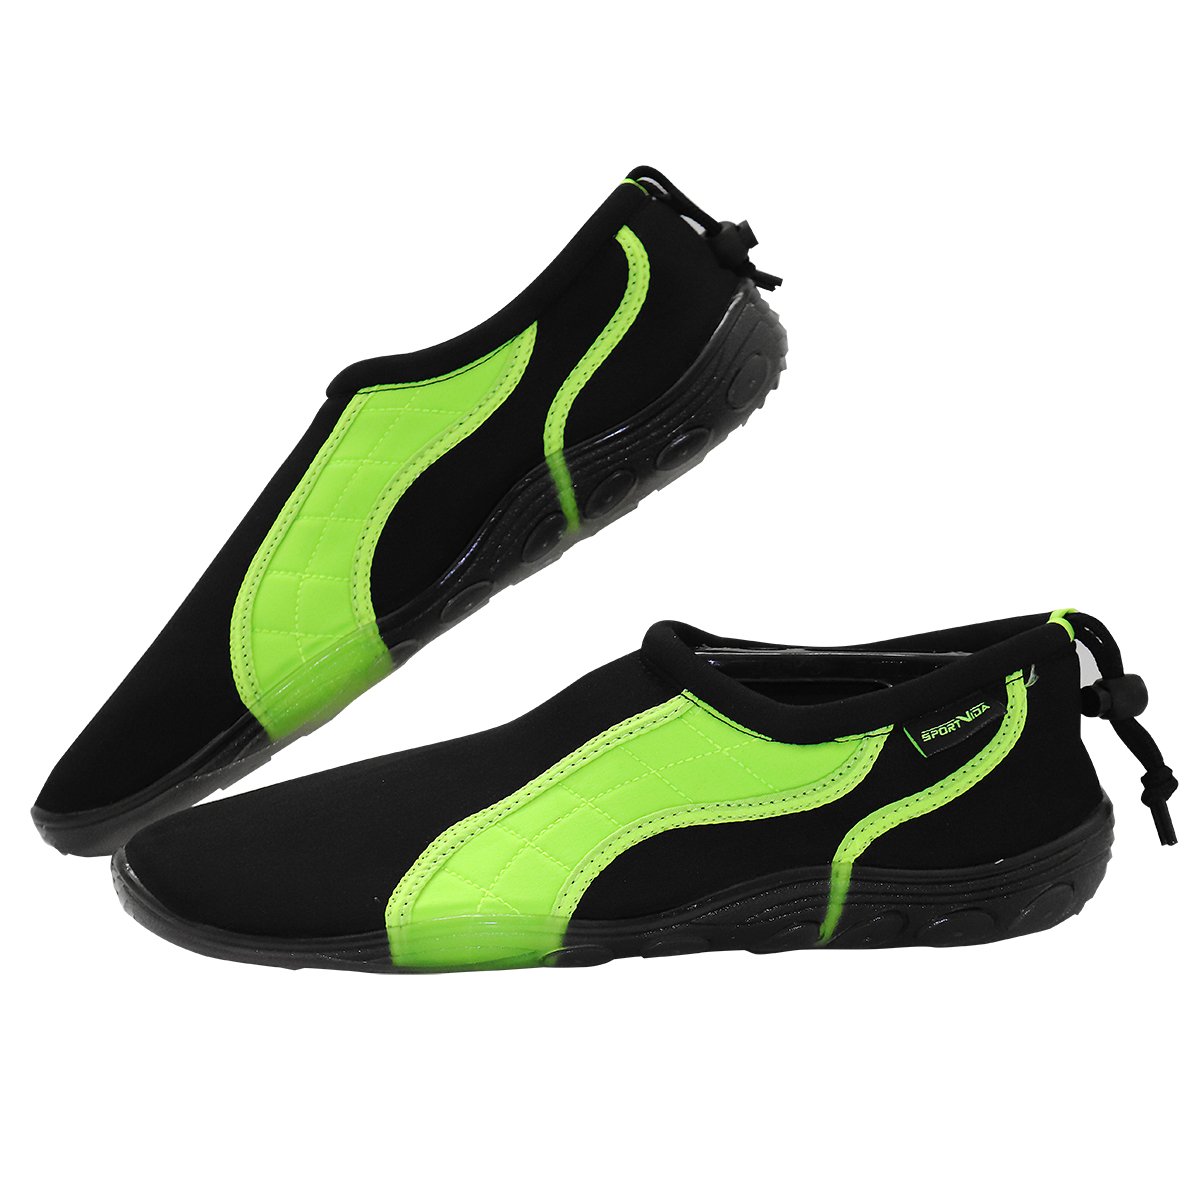 Обувь для пляжа и кораллов (аквашузы) SportVida SV-GY0004-R43 Size 43 Black/Green